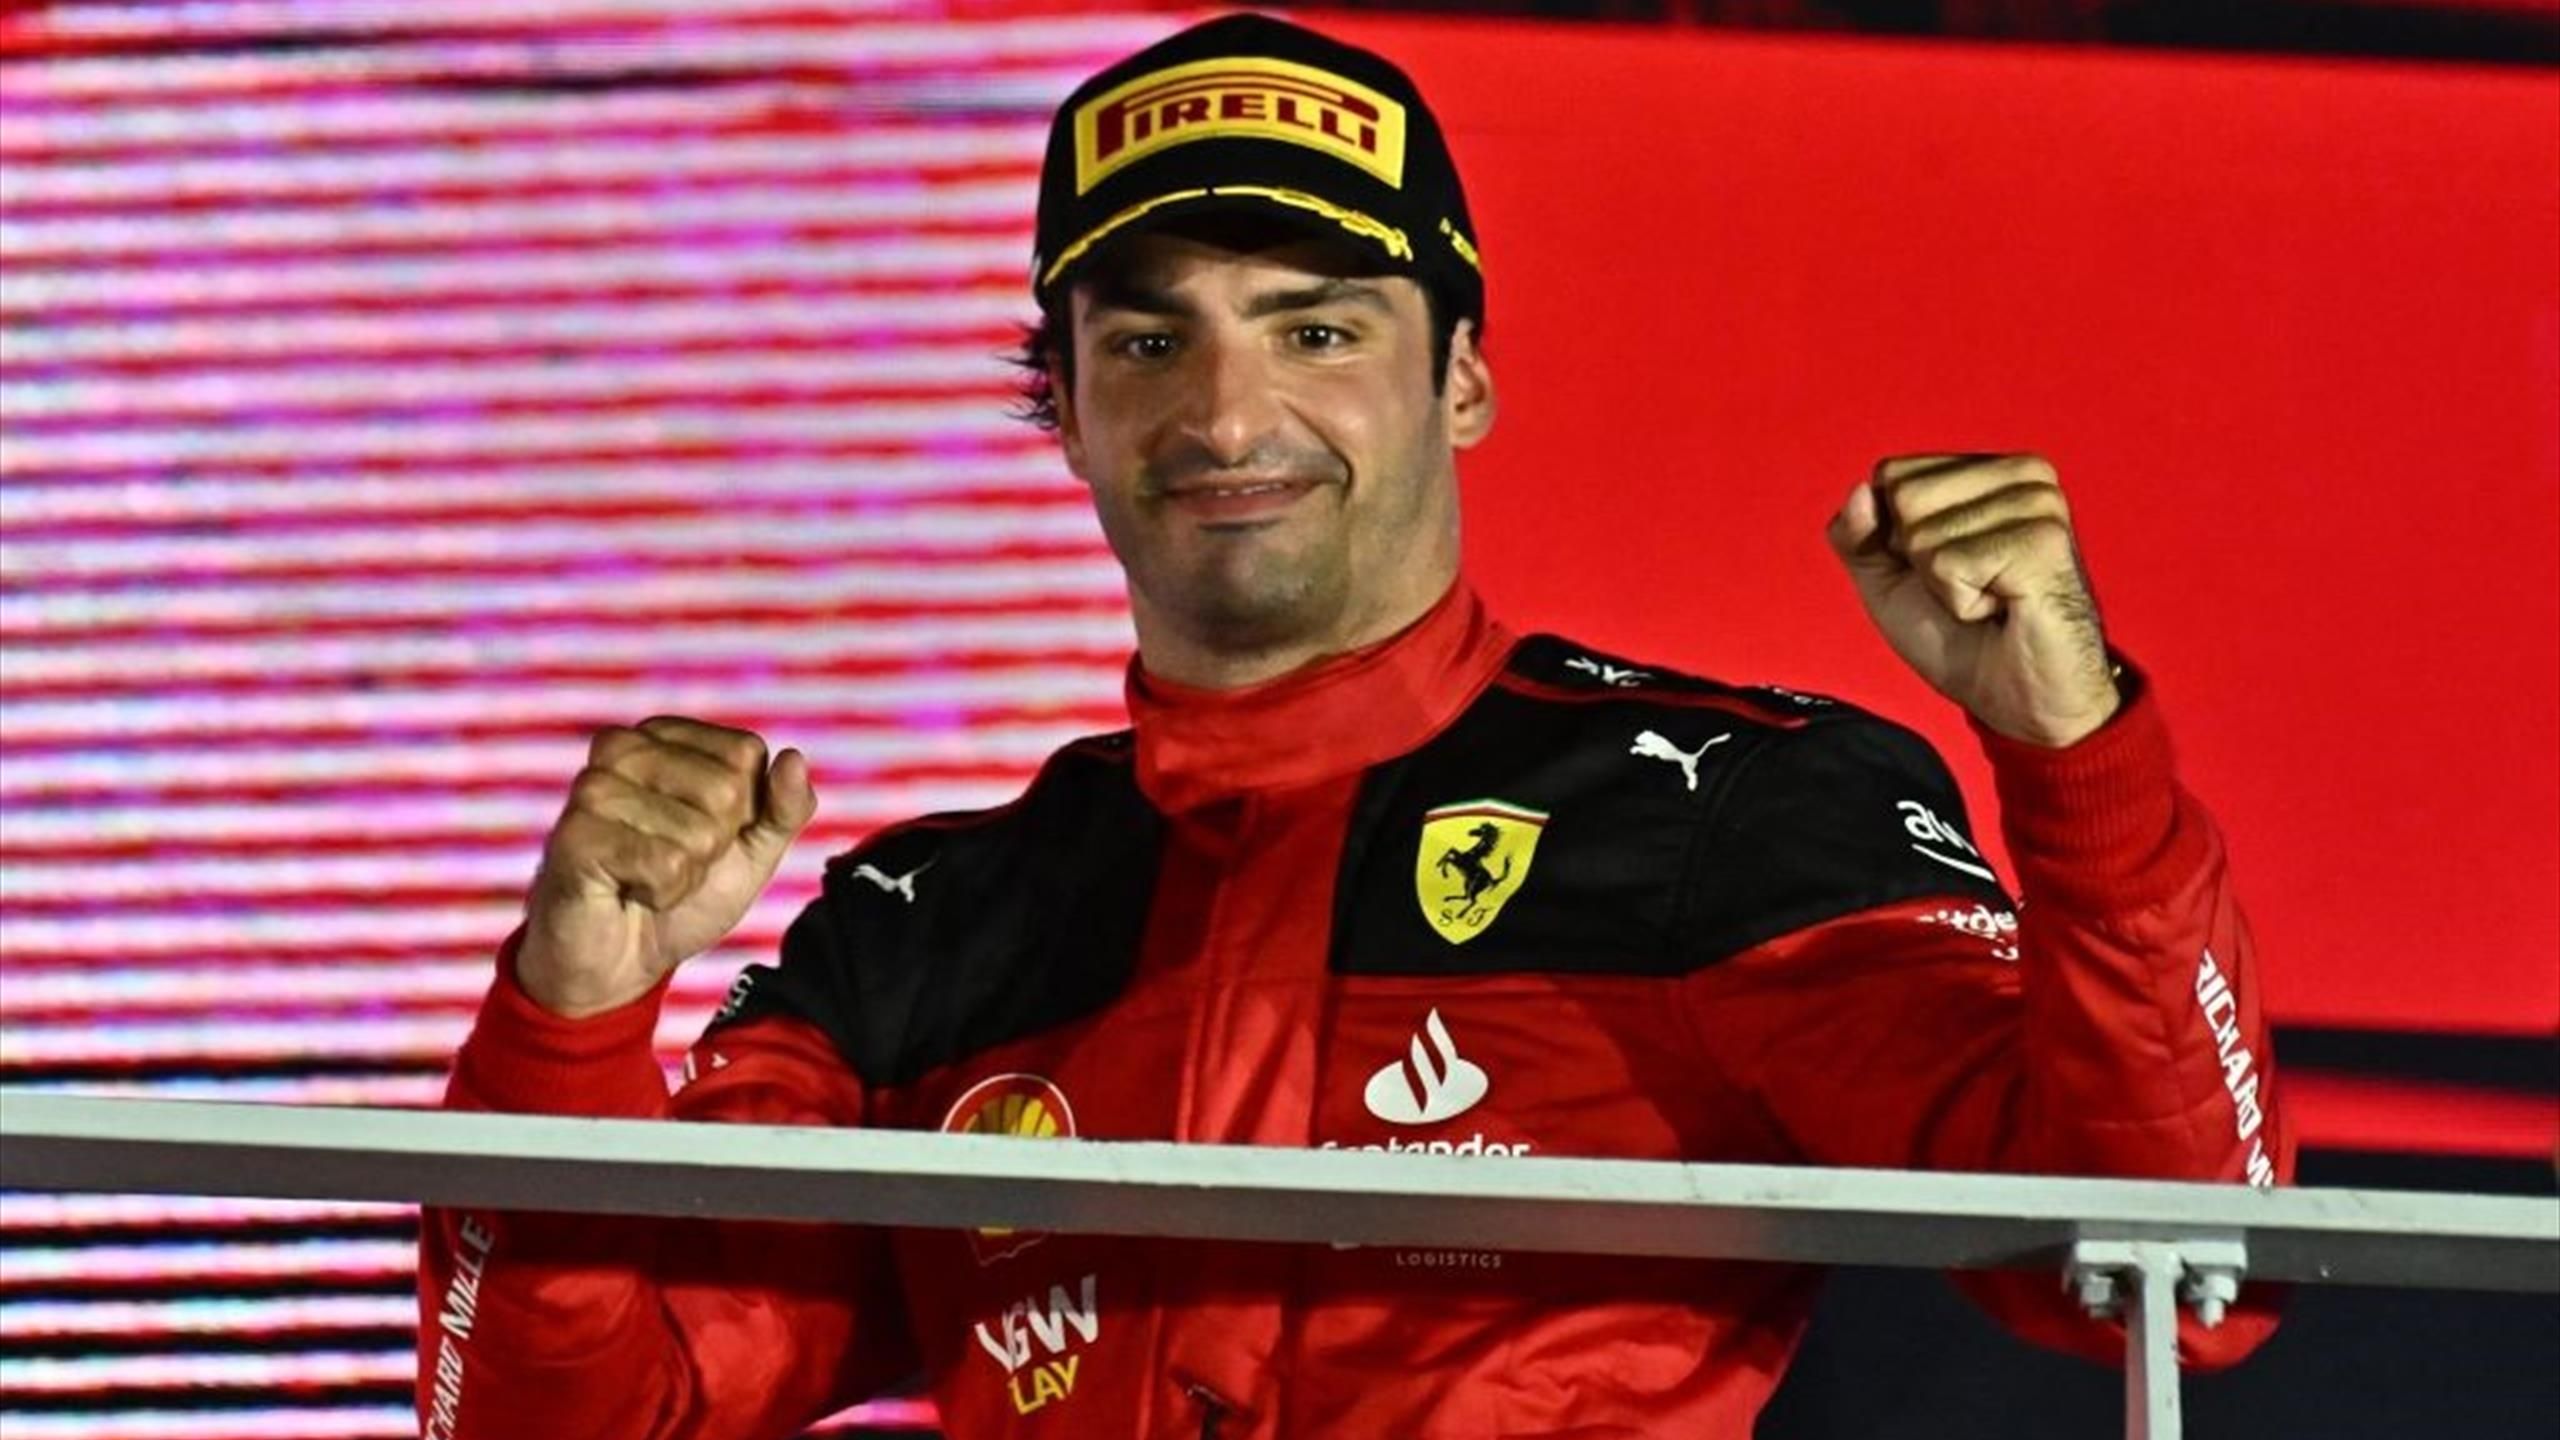 🏎 Pagelle: Sainz firma un capolavoro, Leclerc sfortunato, Verstappen graziato